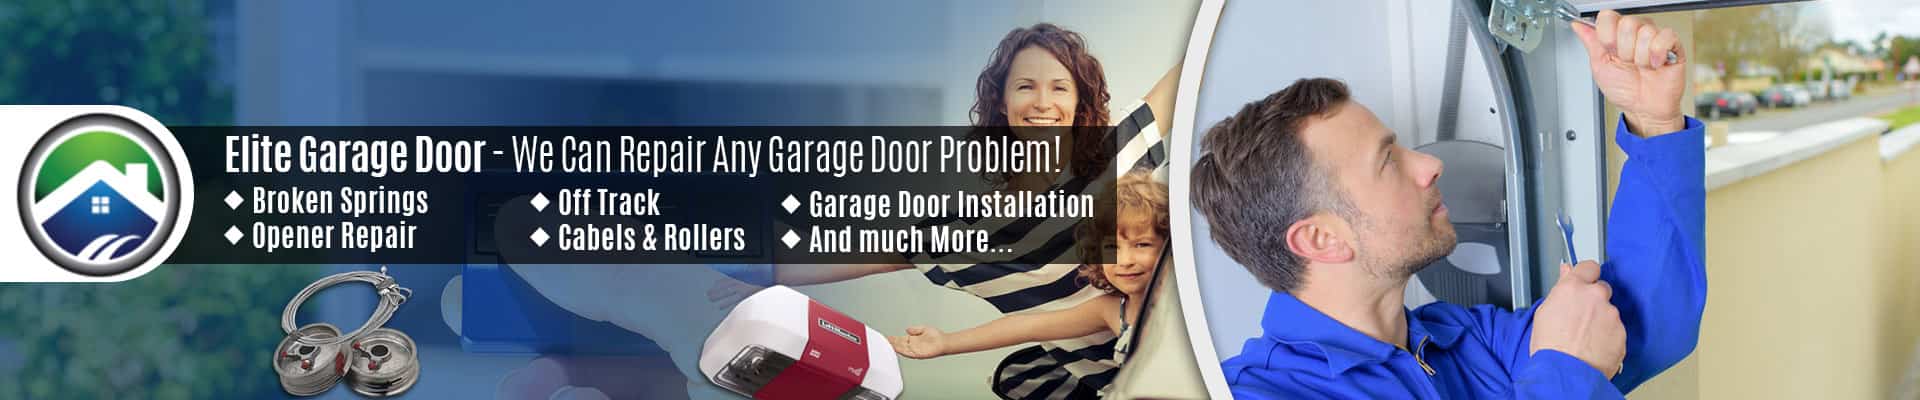 Garage Door Repair Service Stanwood – Elite Garage Door of Marysville 